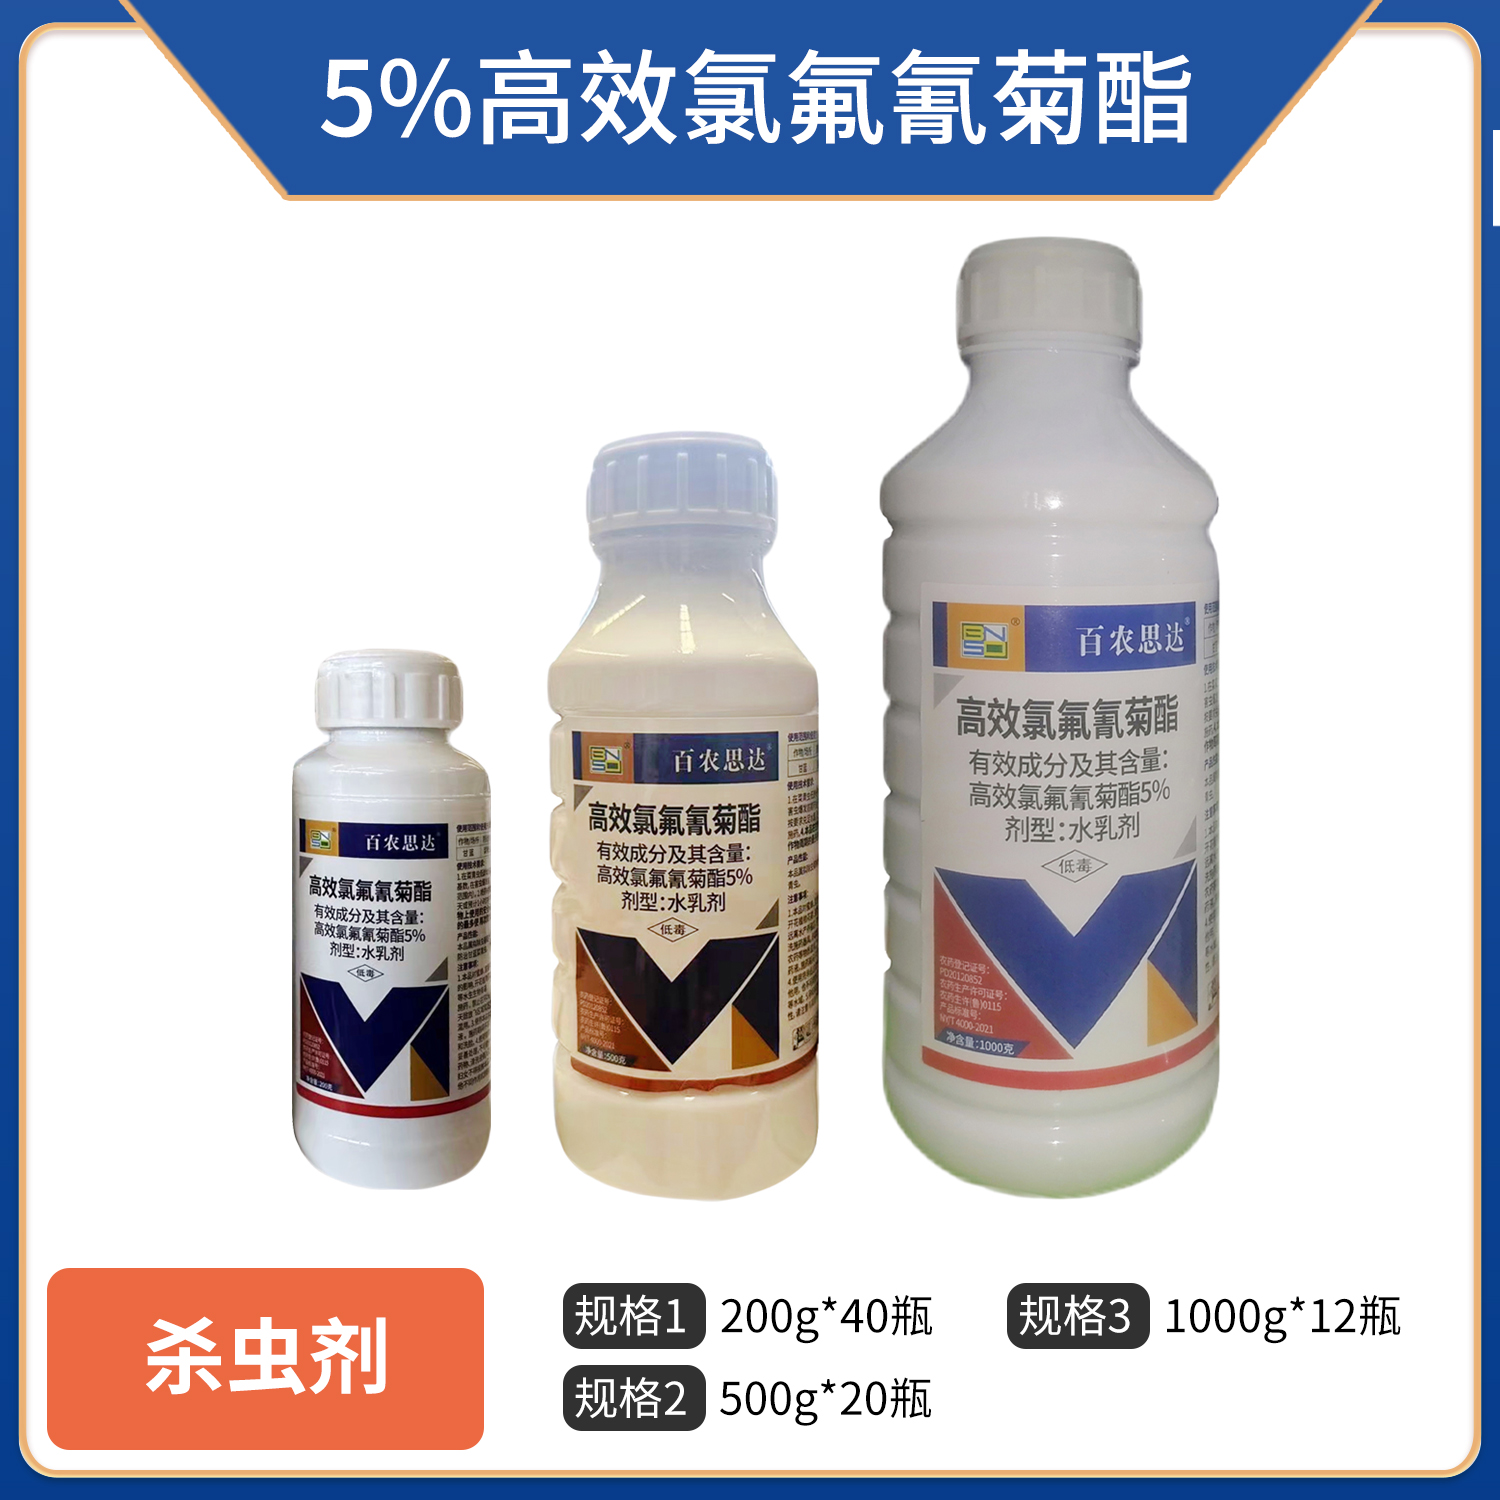 百农思达-5%高效氯氟氰菊酯